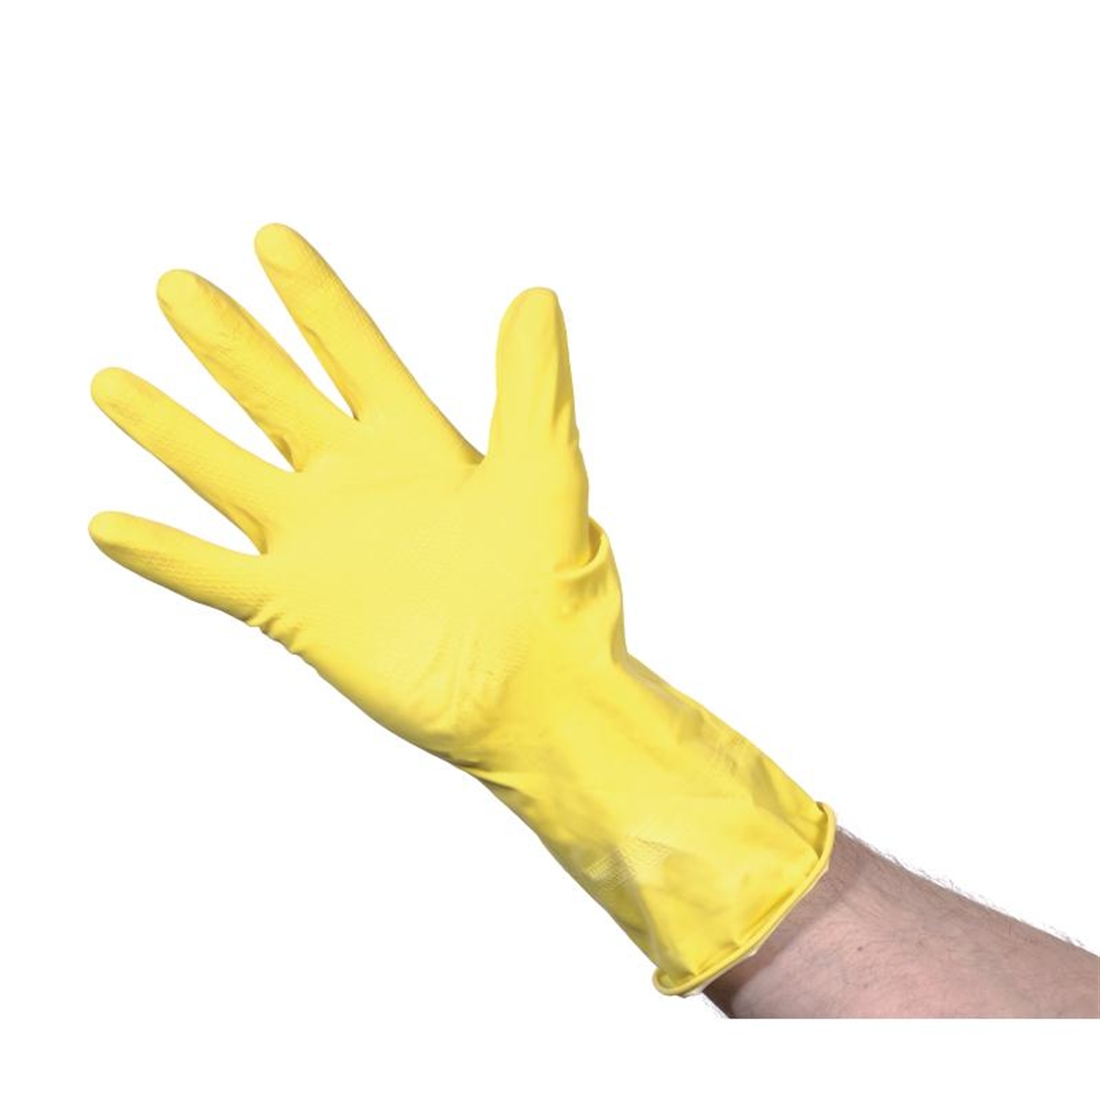 Jantex Household Glove Yellow Medium